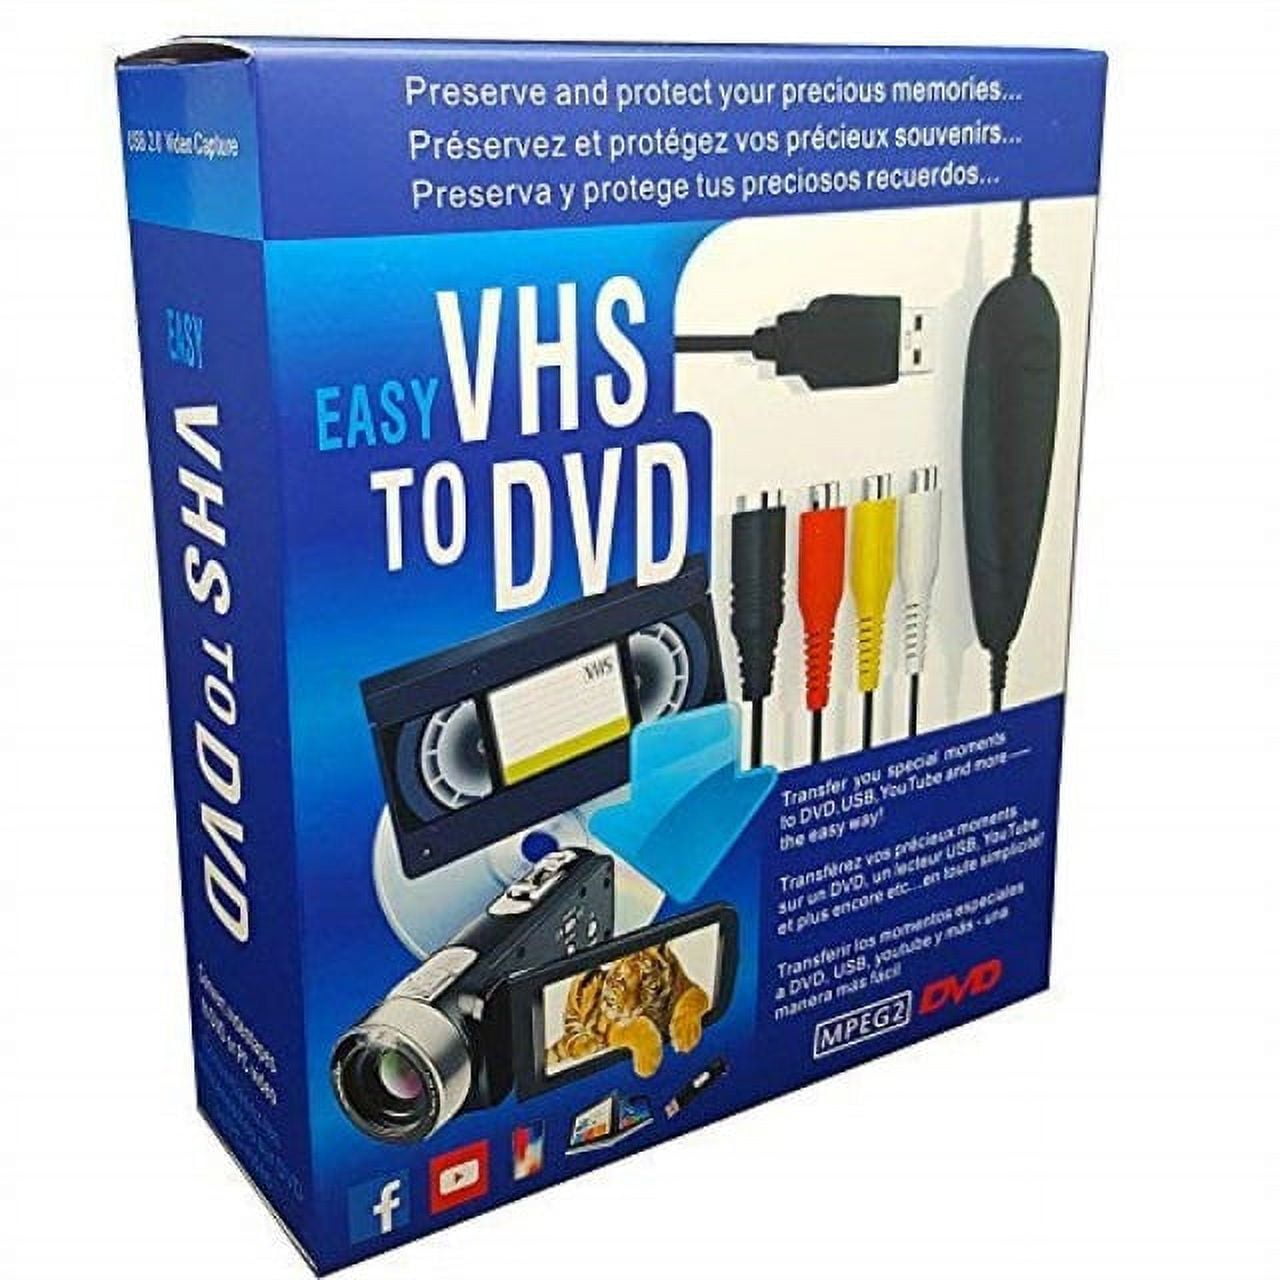 Lecteur deck vidéo magnétoscope Sony WV-H5 Hi8 8 mm VHS